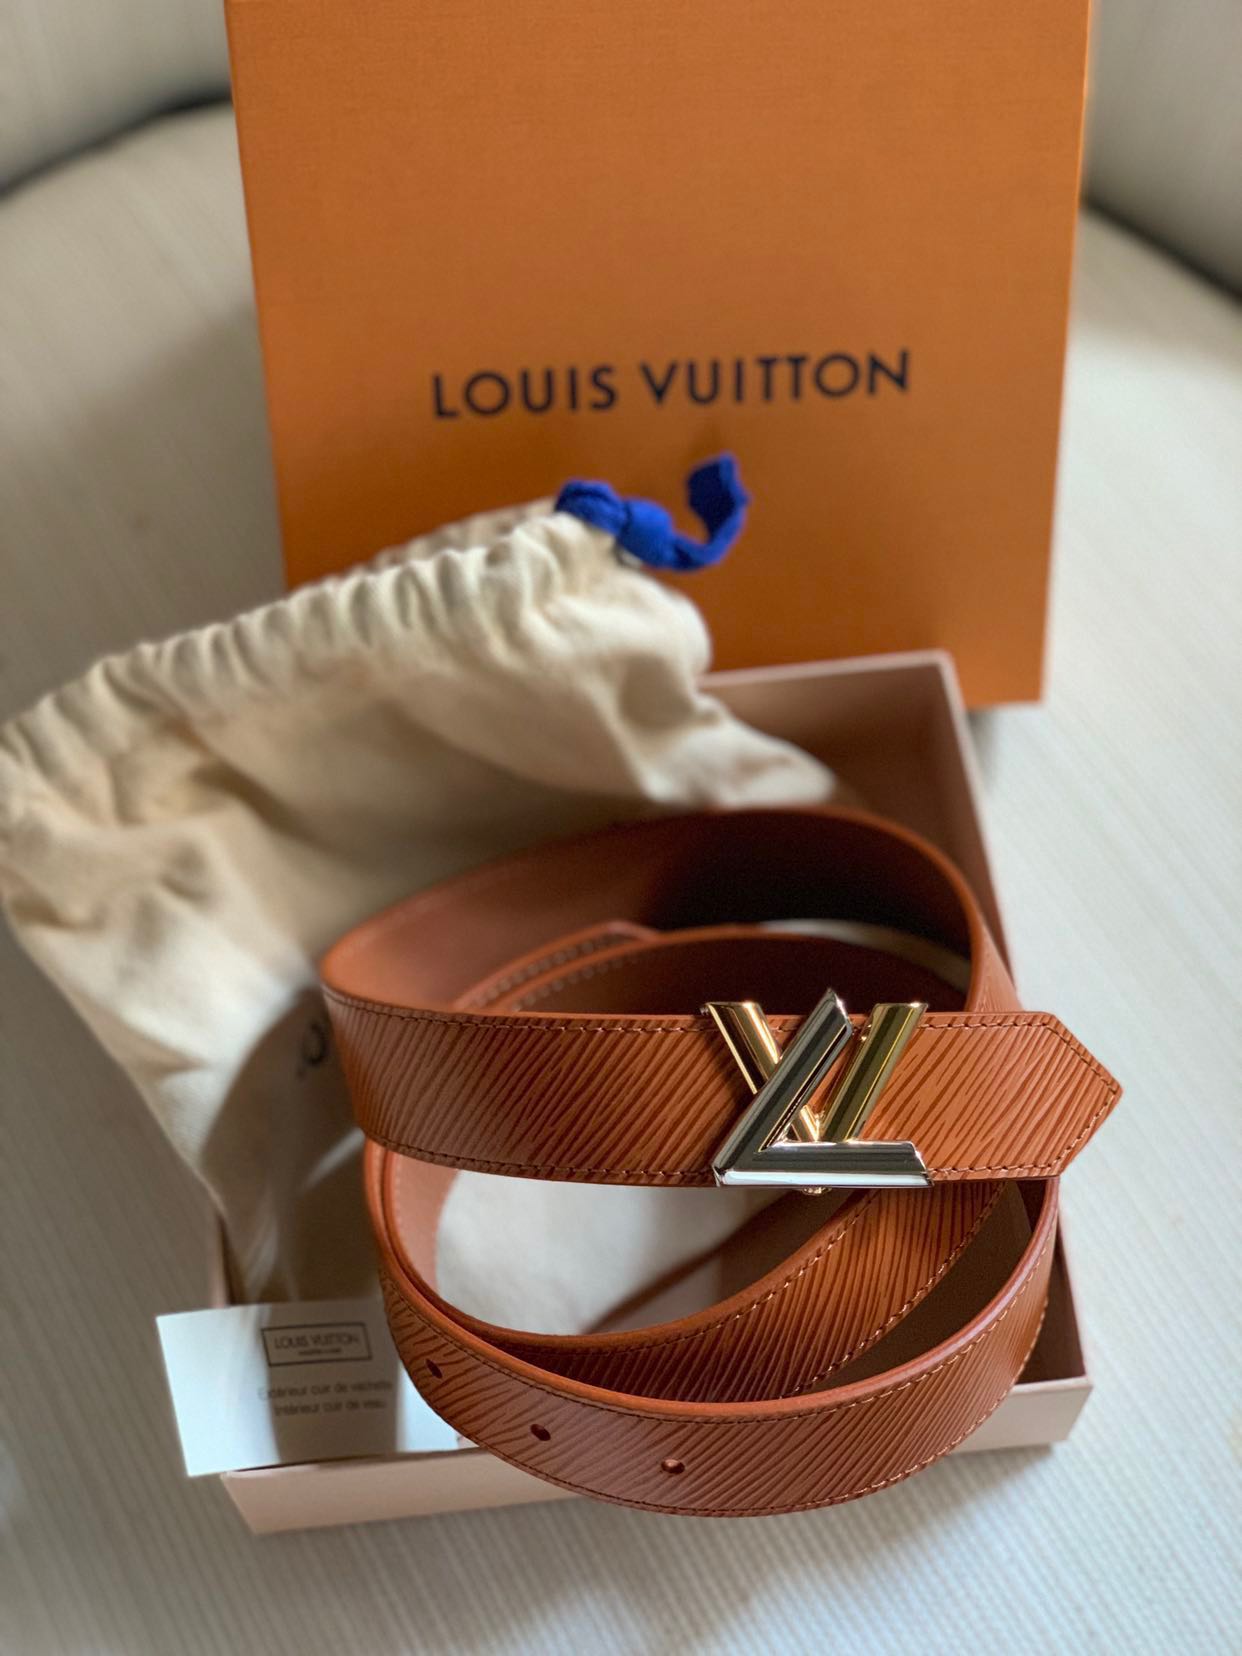 BNIB Louis Vuitton Twist Belt